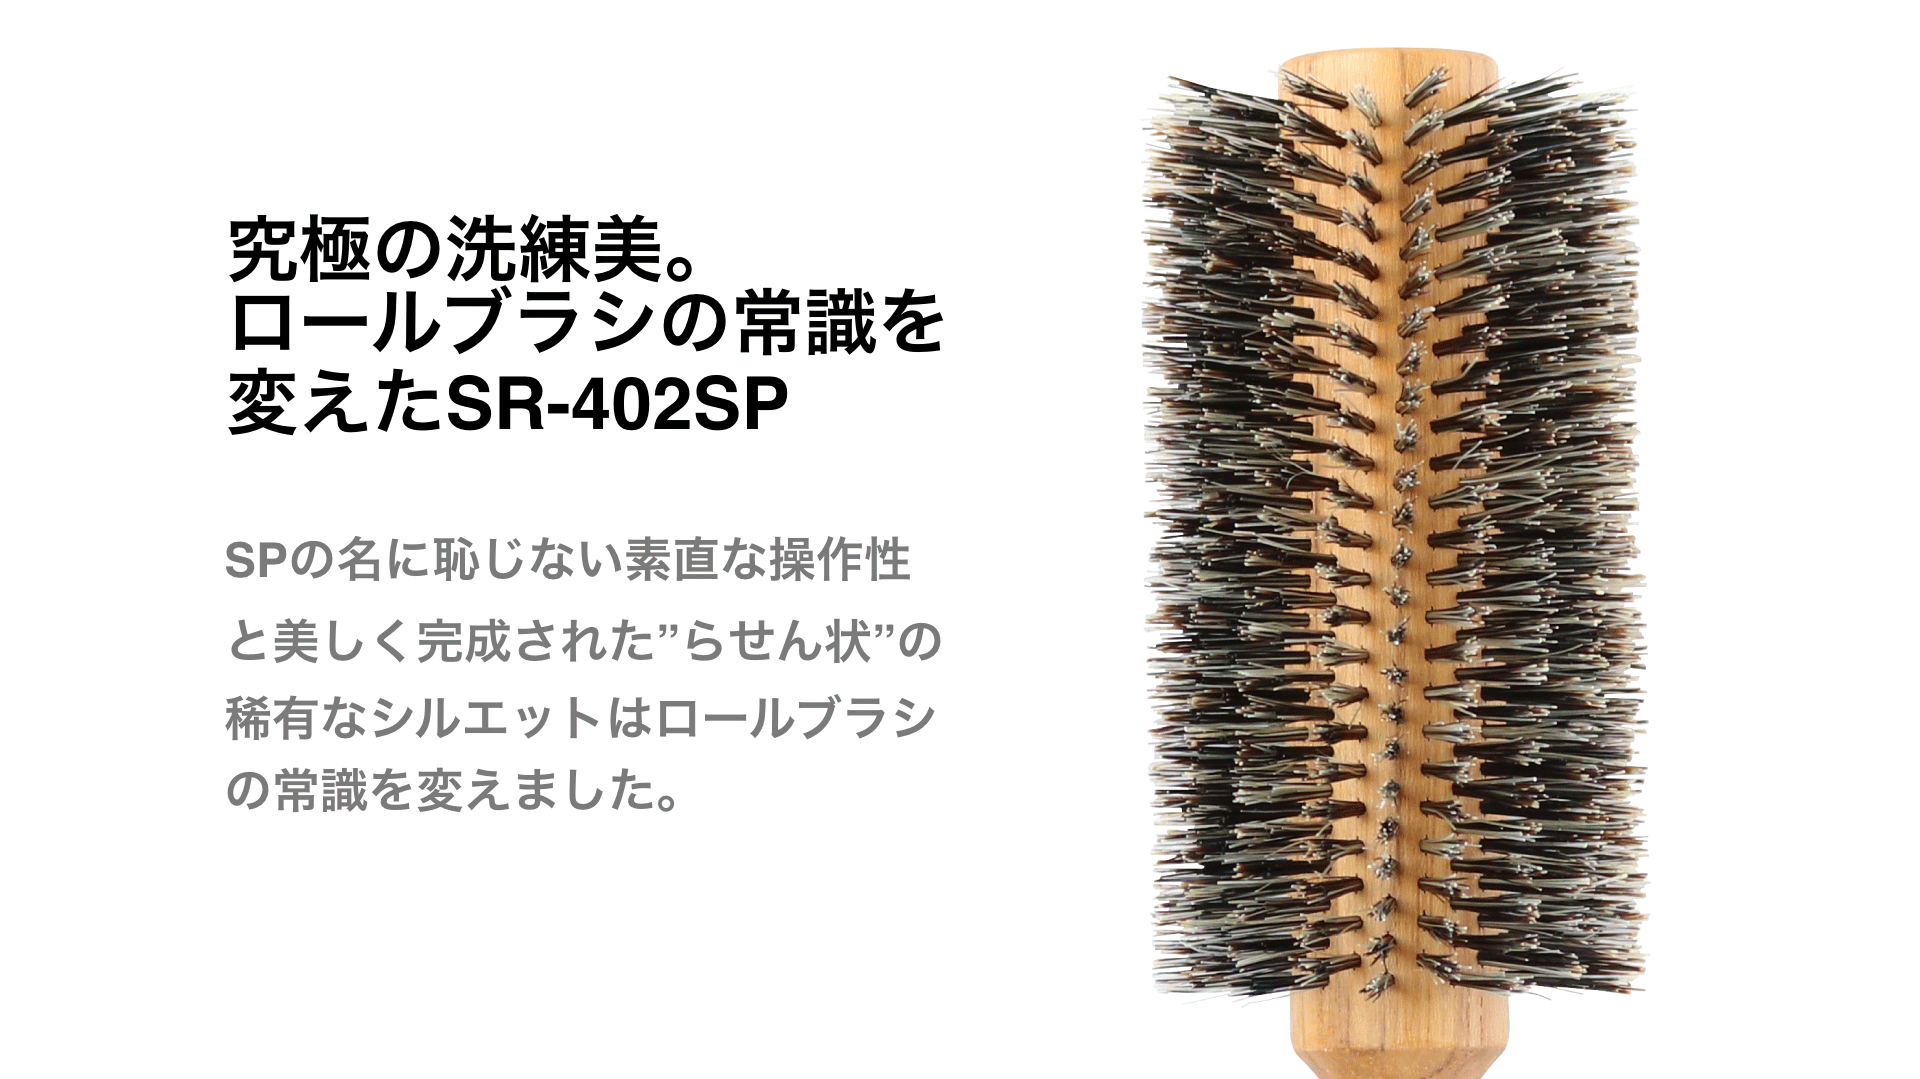 ソフトロールブラシ SR (53mmらせん SR-402SP)